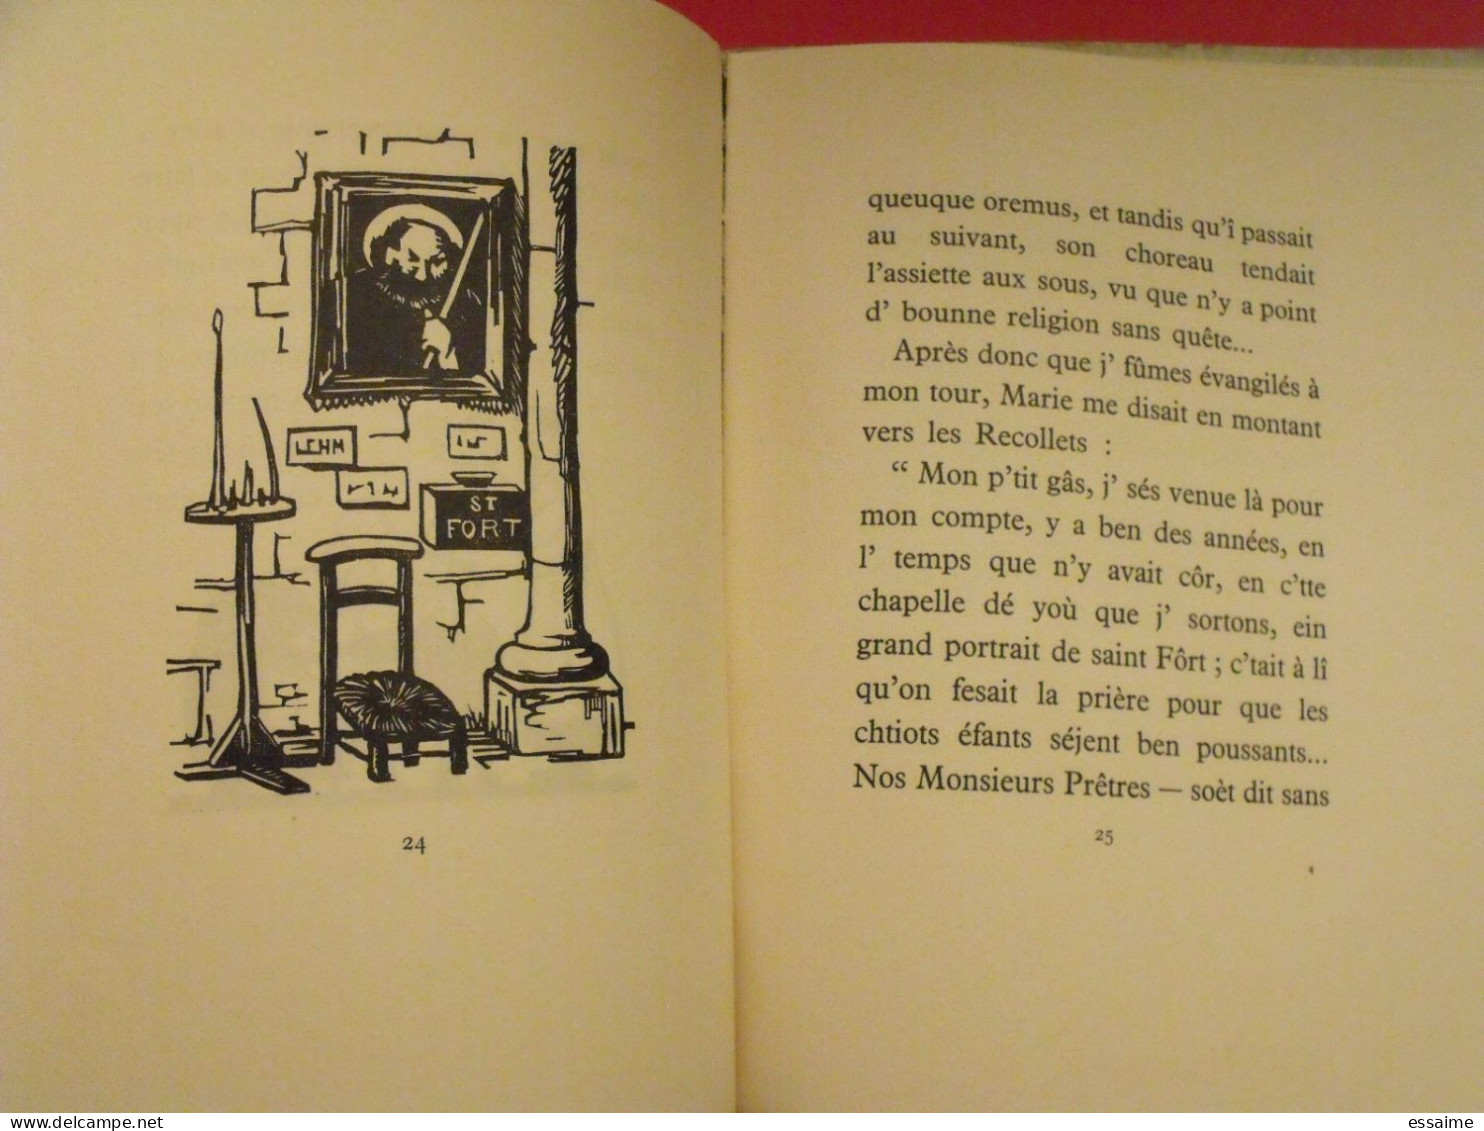 La légende de Saint-Fort. Marc Leclerc. André Bruel, Angers, 1933. numéroté 264.patois de l'Anjou. illust. Morin.